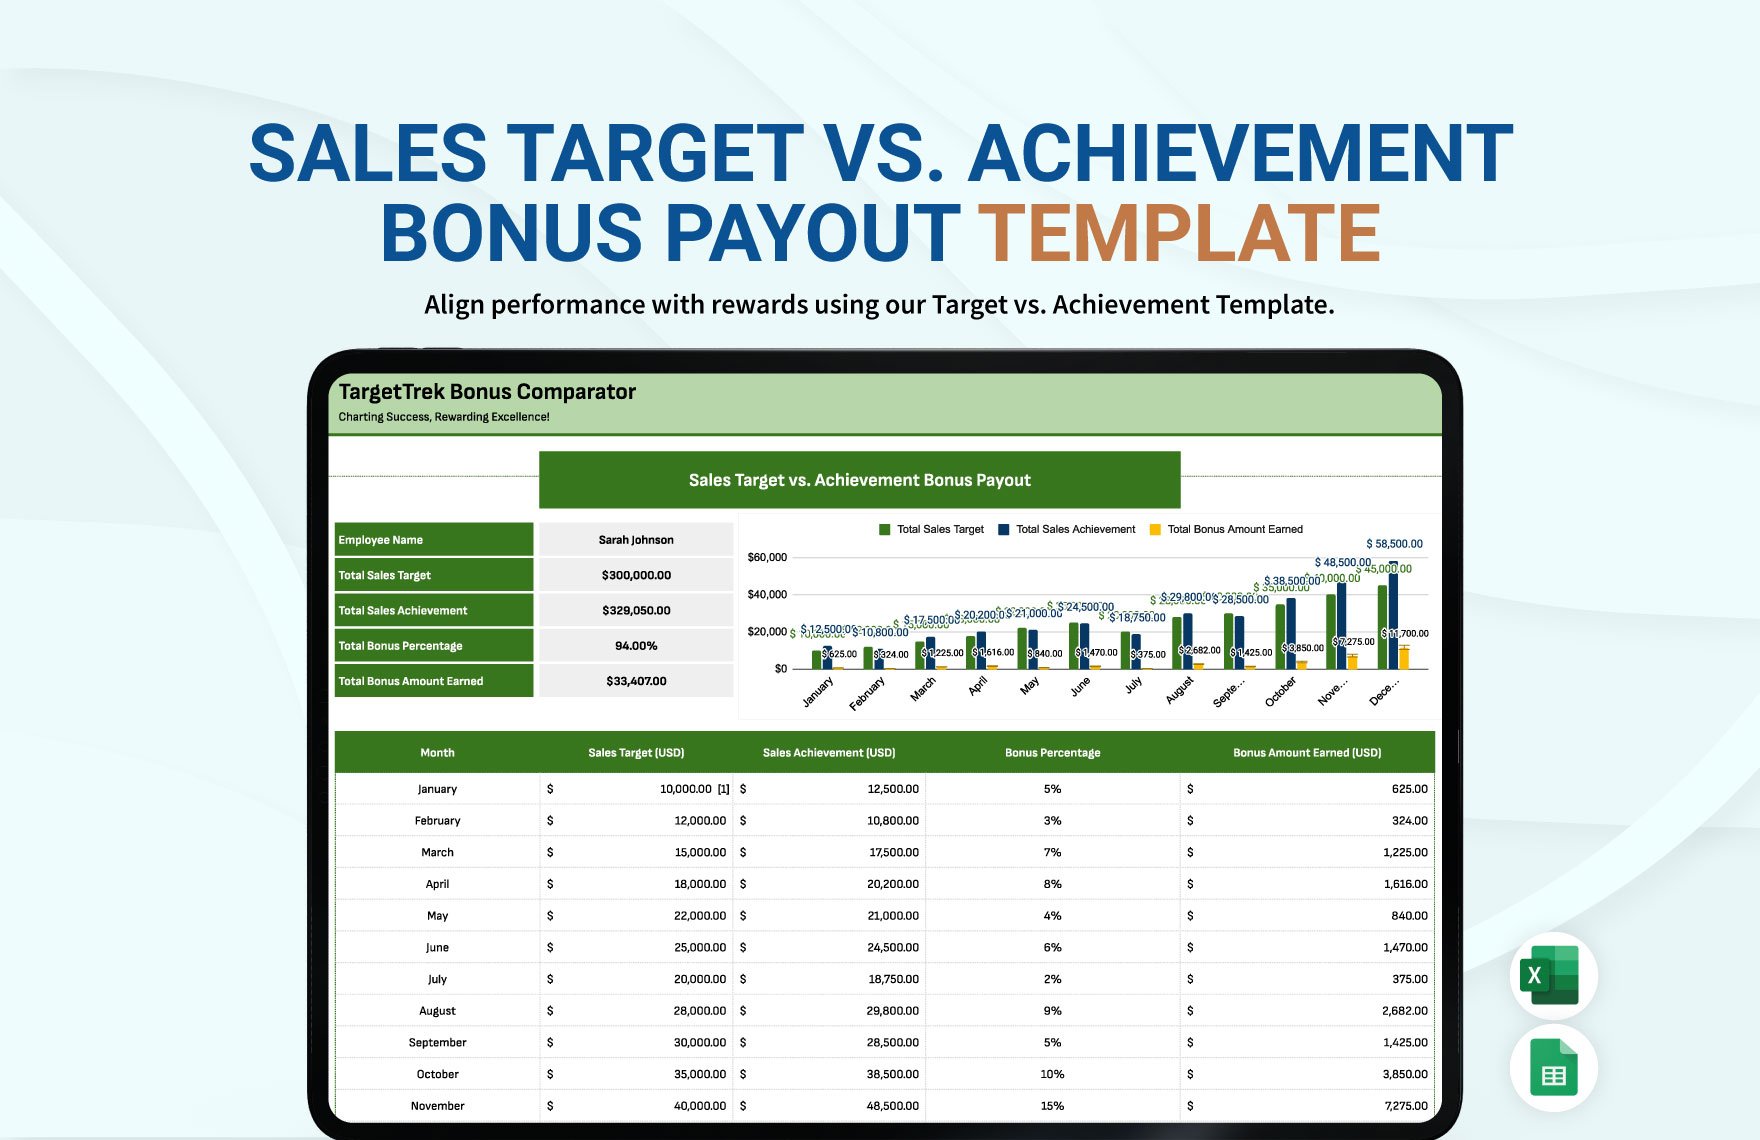 Sales Target vs. Achievement Bonus Payout Template